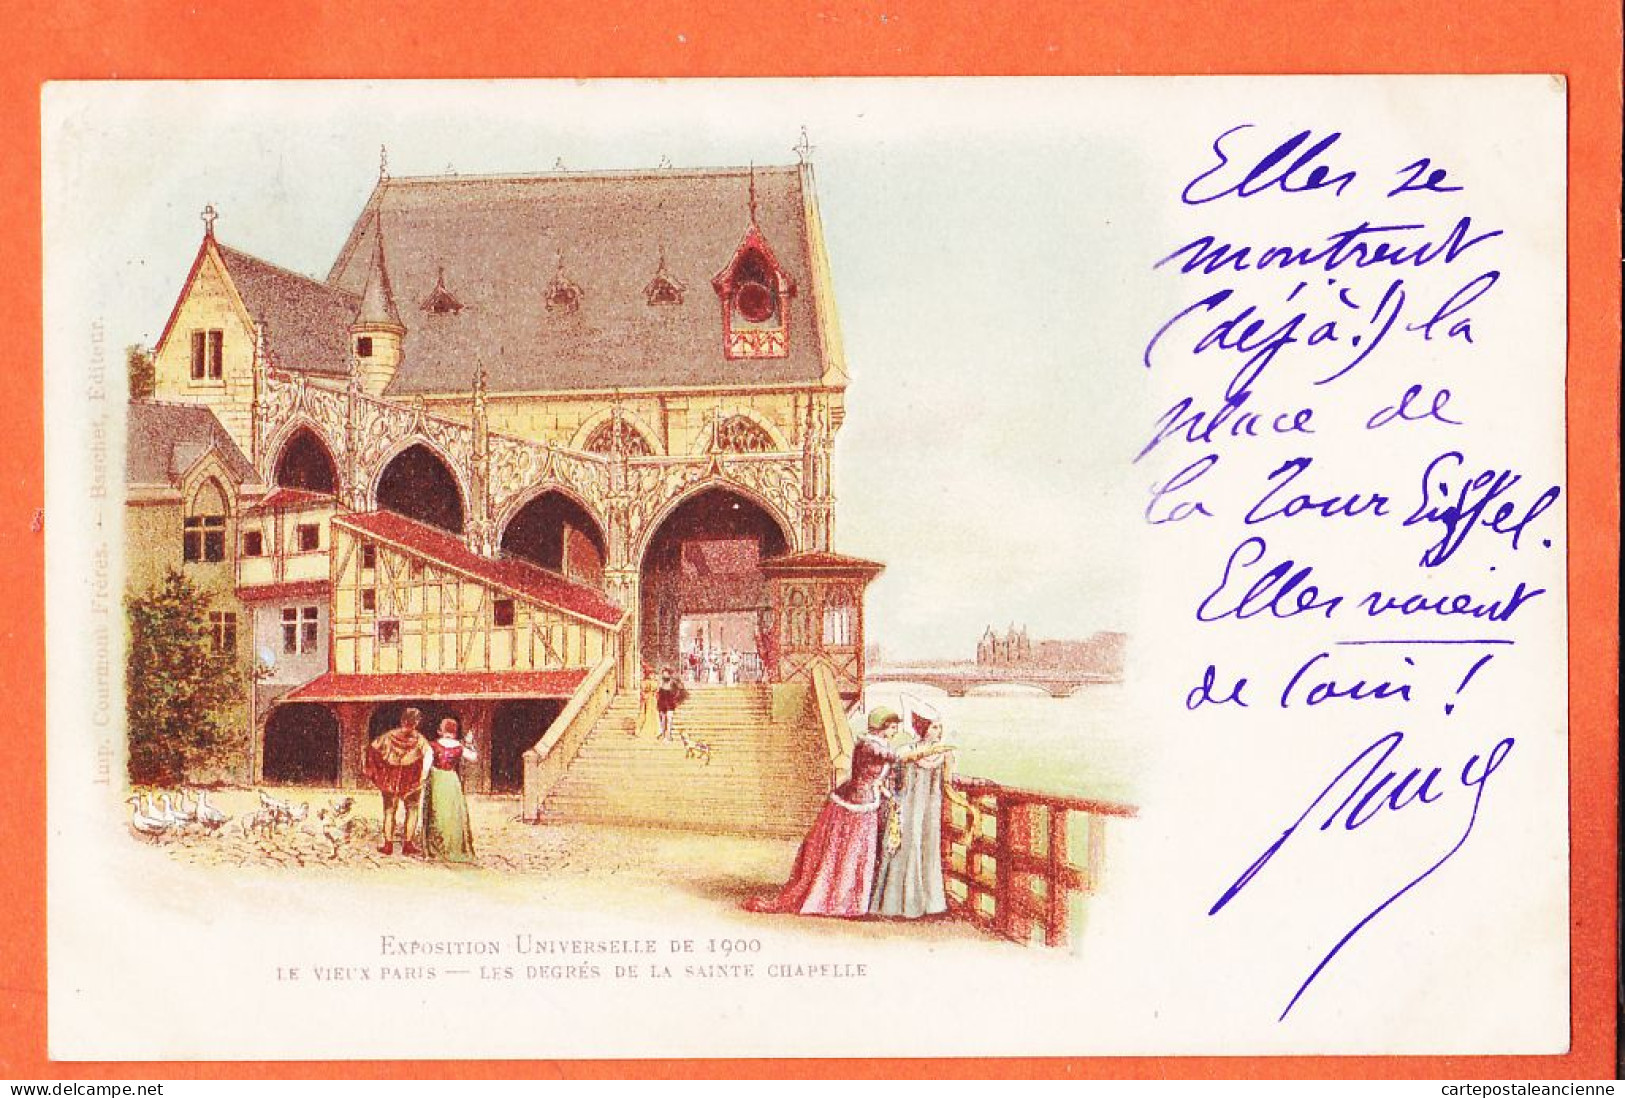 31588 / VIEUX PARIS Exposition Universelle 1900 Degres SAINTE-CHAPELLE Ste Louis ALBY Chateau Parisot COURMONT-BASCHET - Expositions